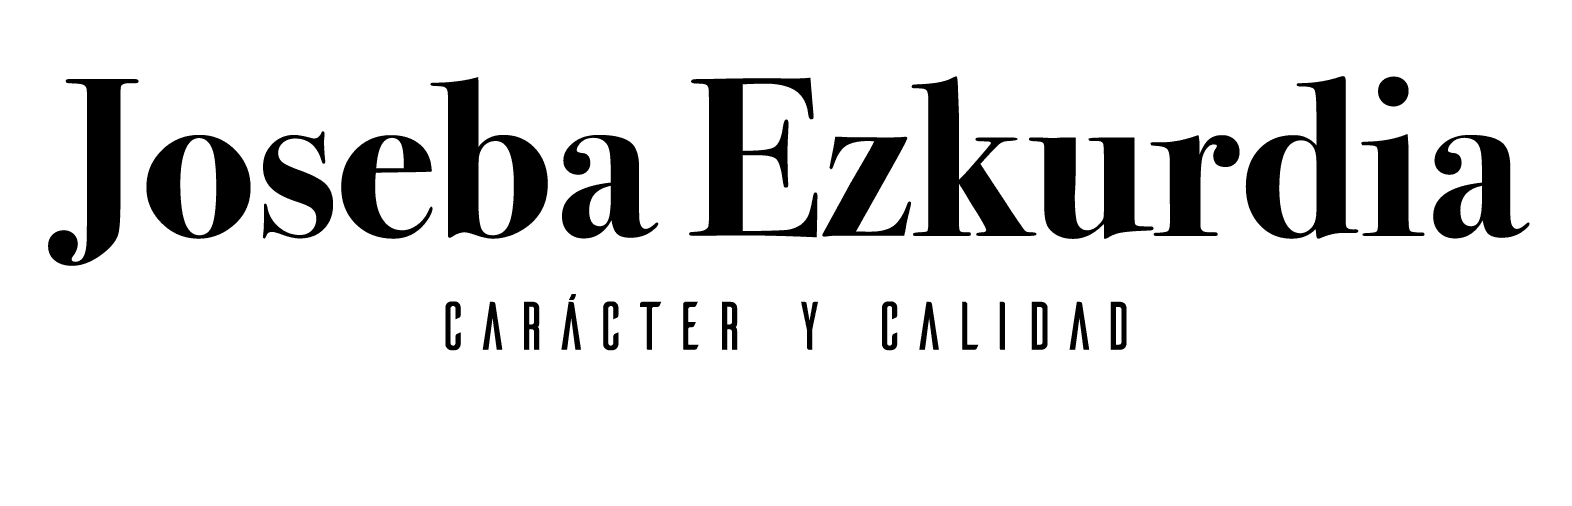 Joseba Ezkurdia carácter y calidad